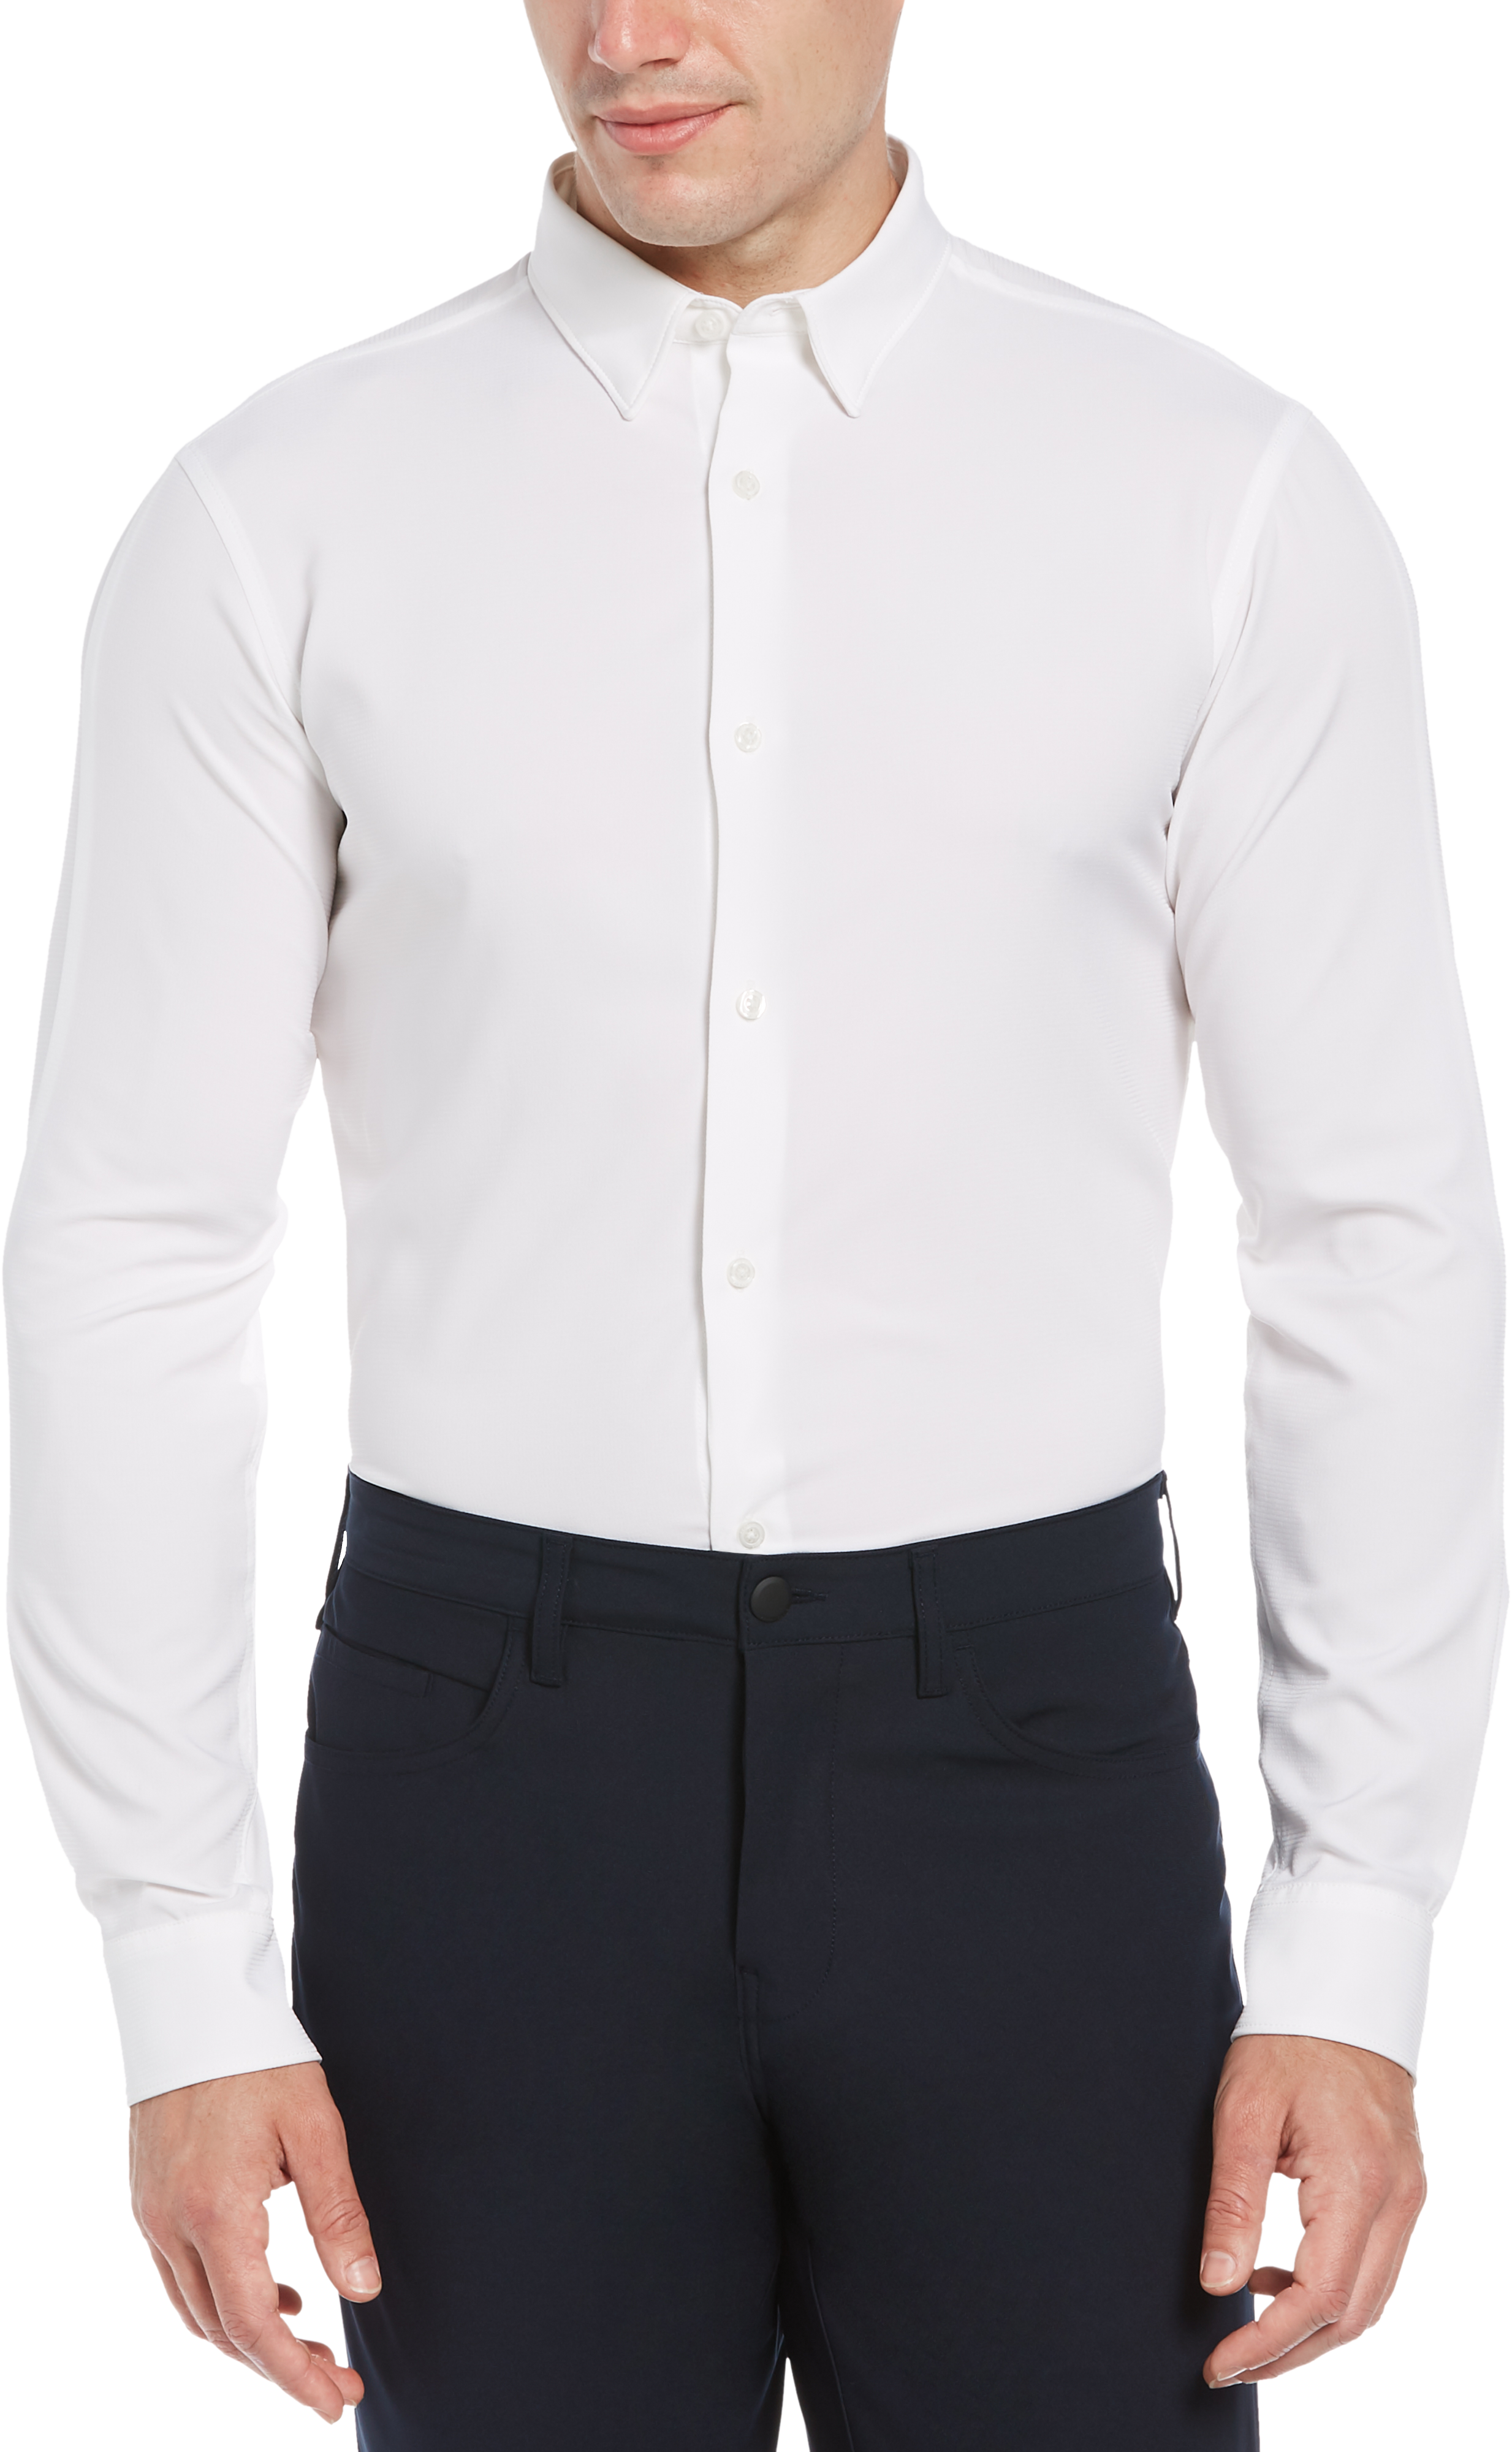 Perry Ellis Motion Slim Fit Knit Shirt, White Crosshatch - Men's Sale ...